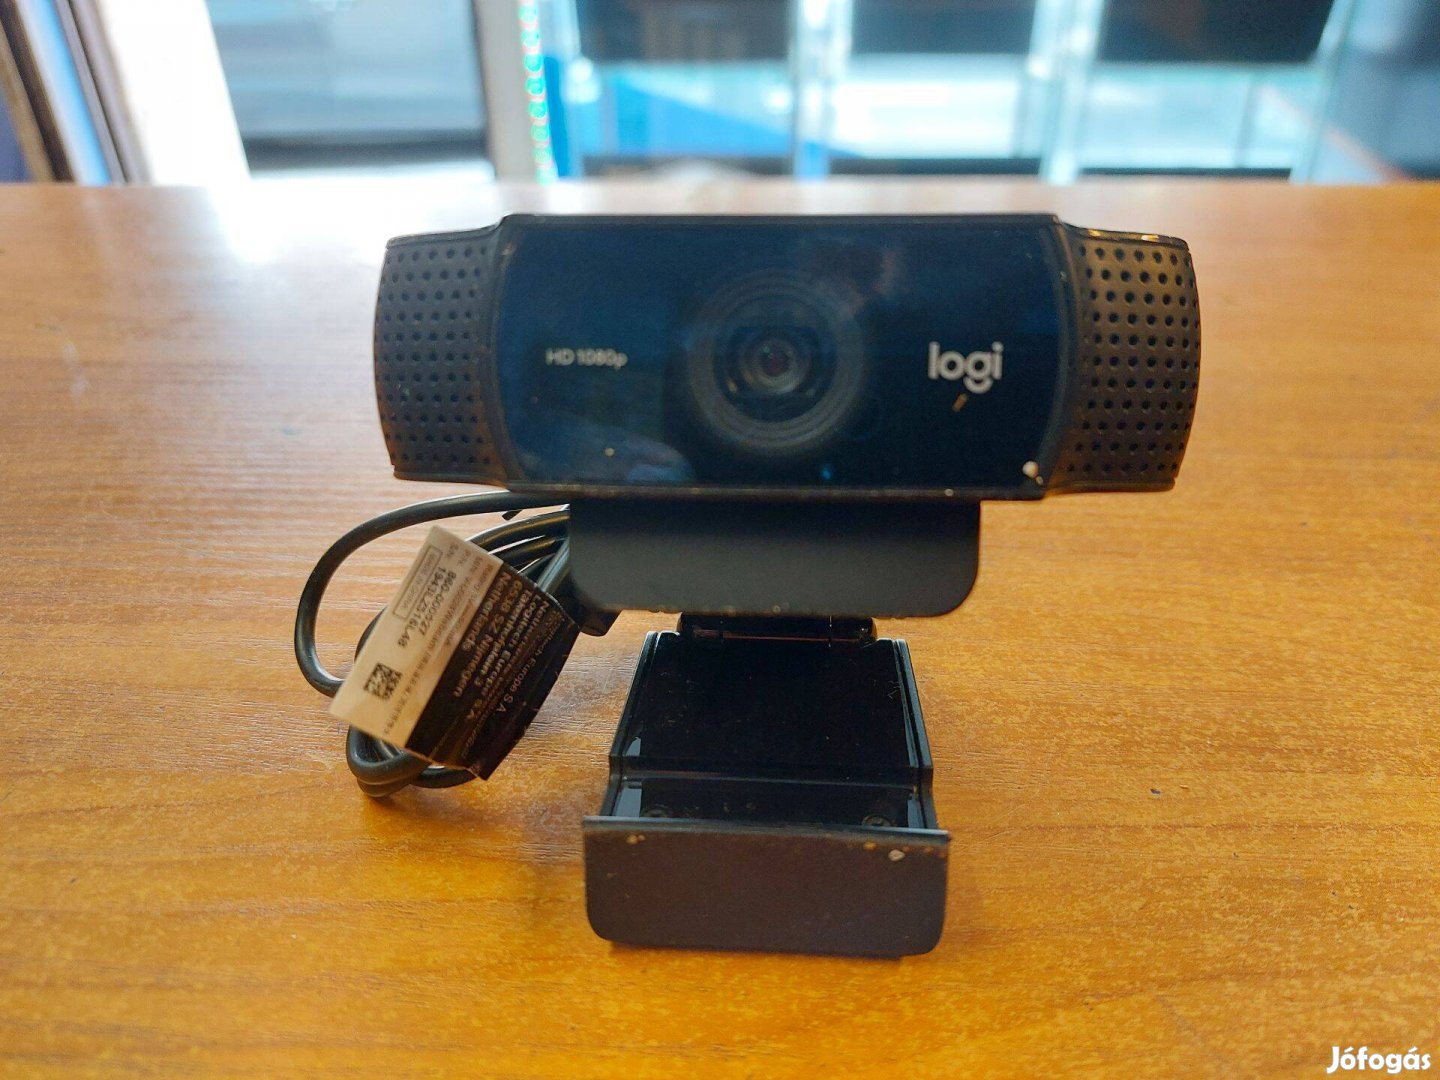 Logitech C920 (V-U0028) HD webkamera olcsón!!!Akcióó!